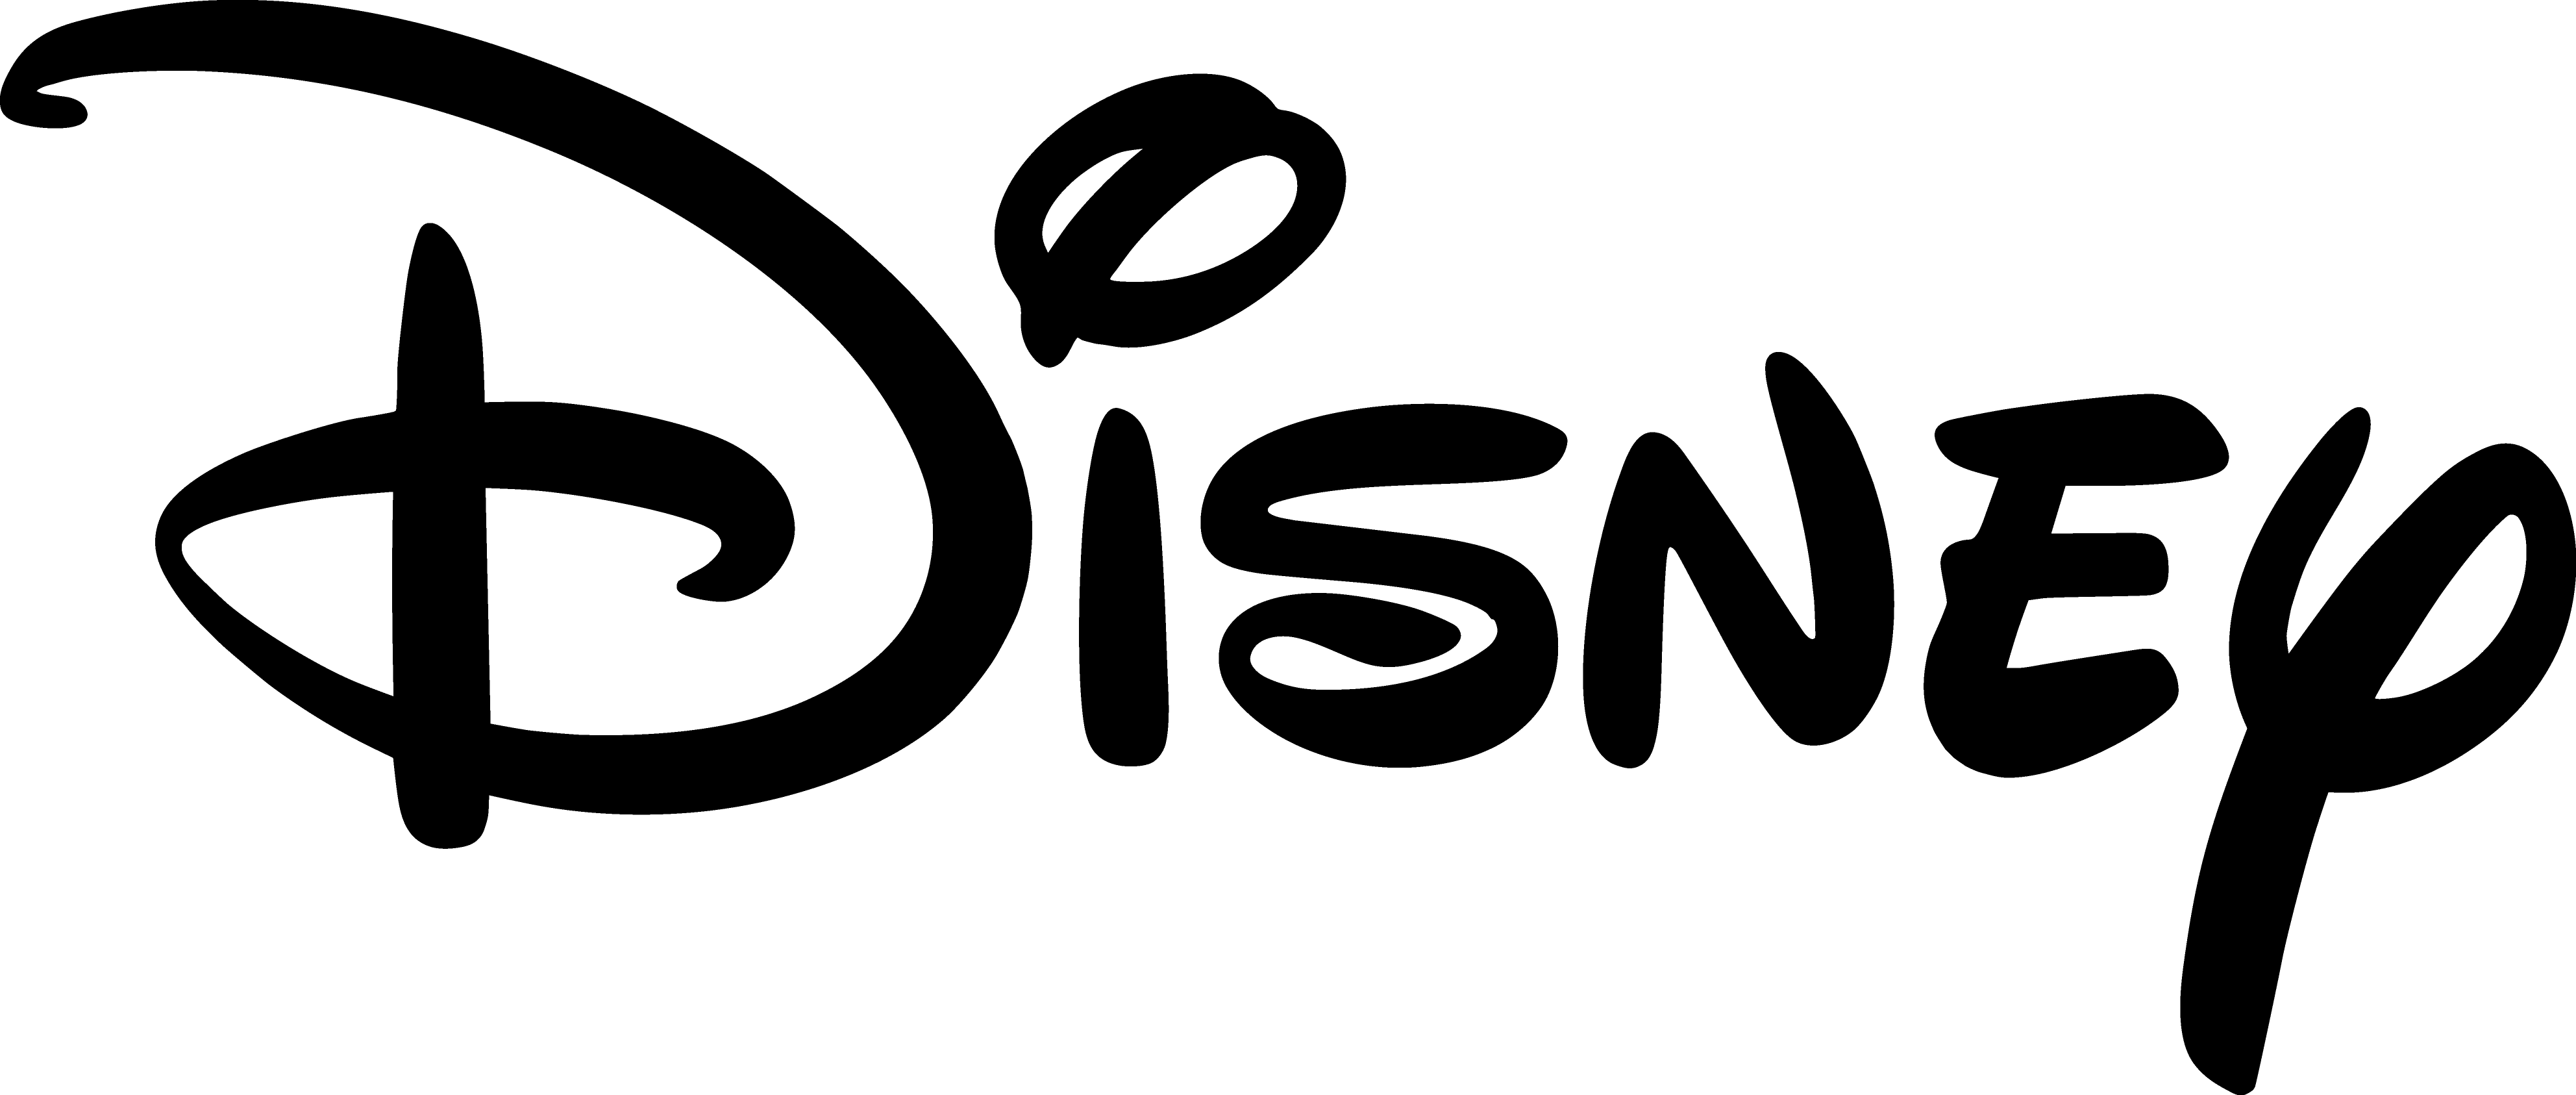 Disnesy Logo - Walt Disney logo PNG images free download